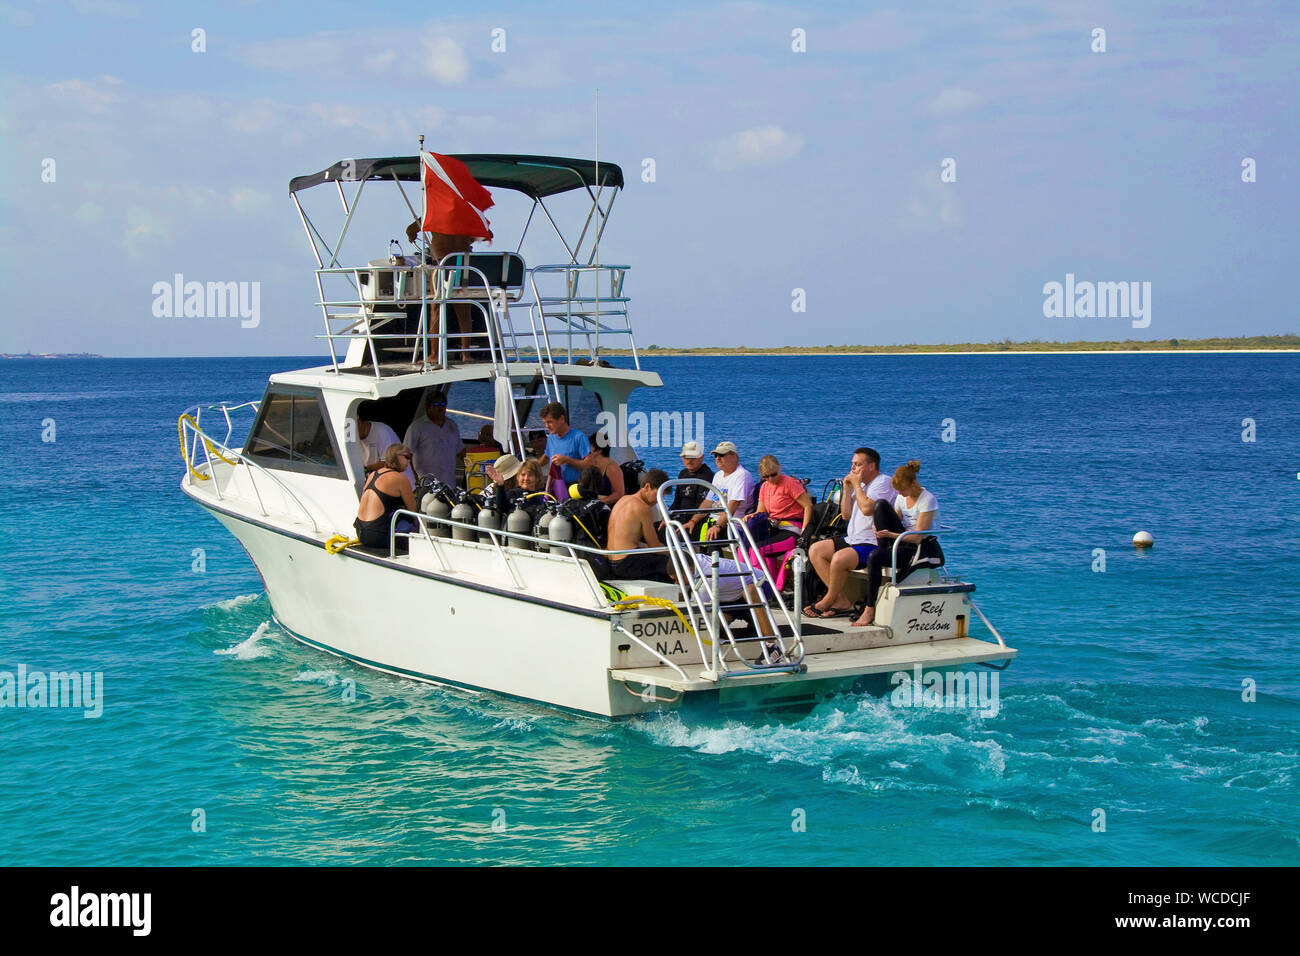 Bateau de plongée avec scuba diver, bateaux voyage à peu de Bonaire, Captain Don's Habitat, Resort et hôtel de plongée, Kralendijk, Bonaire, Antilles néerlandaises Banque D'Images